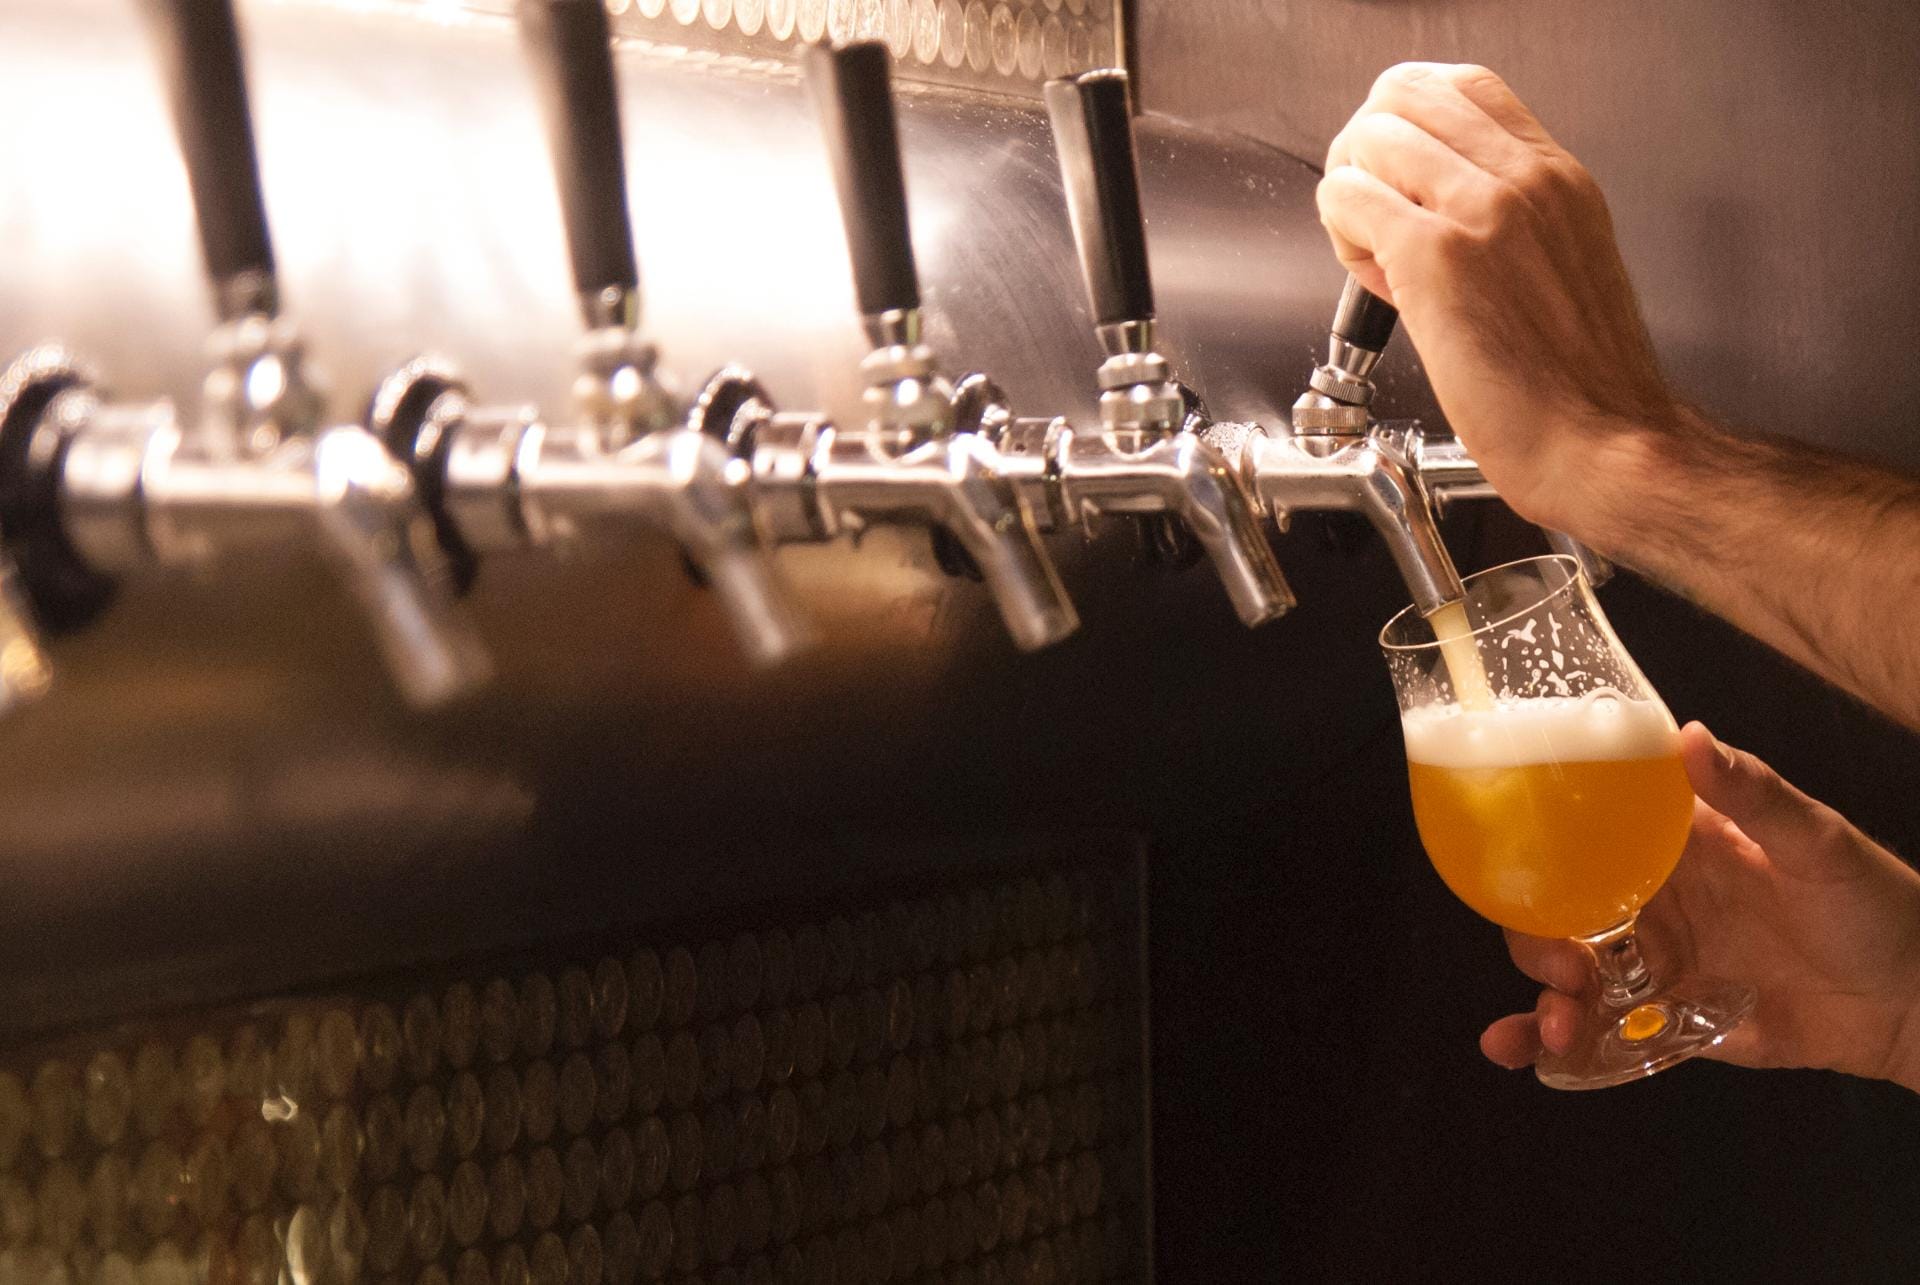 Denn es wird bei fünf bis sieben Grad getrunken, und eine dicke, ungekühlte Glaswand erwärmt das Bier schon beim Einschenken.